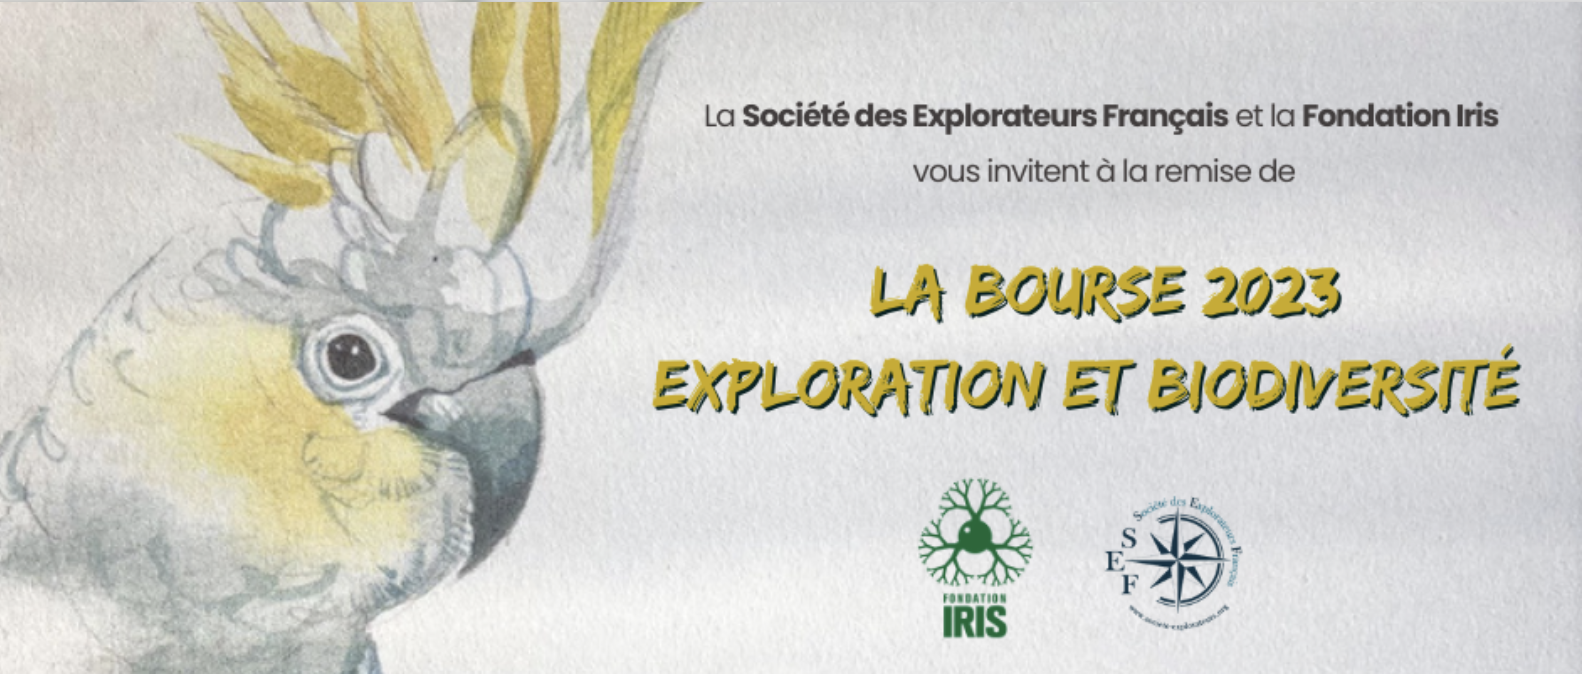 Remise de la Bourse SEF-IRIS 2023 « Exploration et biodiversité » -  la Fondation Iris et la Société des Explorateurs Français